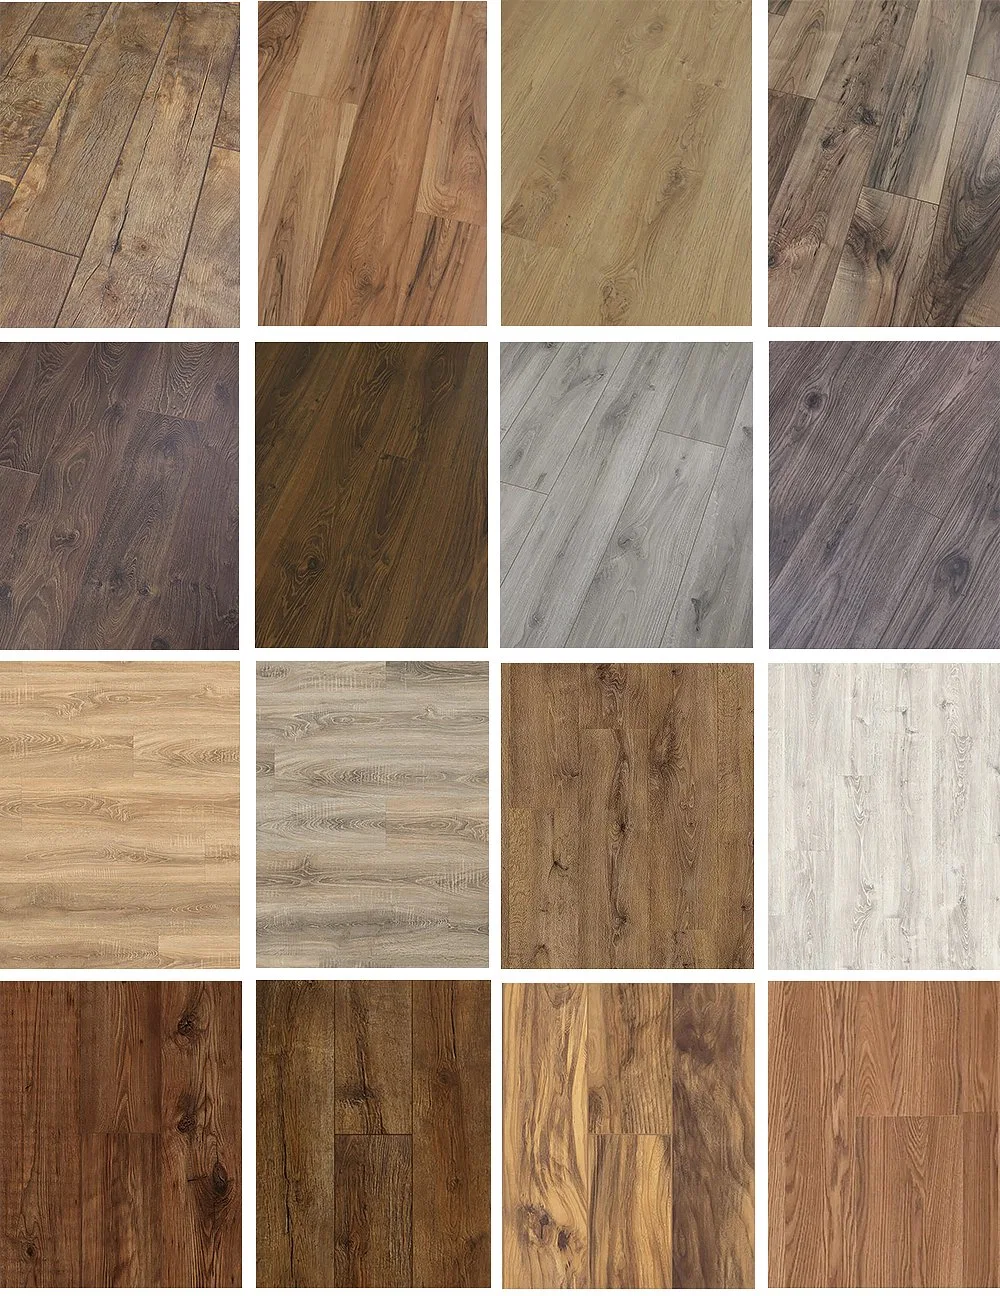 100% Waterproof Spc Floor / Vinyl Flooring/Lvt Dry Back/PVC Skirting Board/Spc Floor/Porcelain Tiles/Ceramic Tile